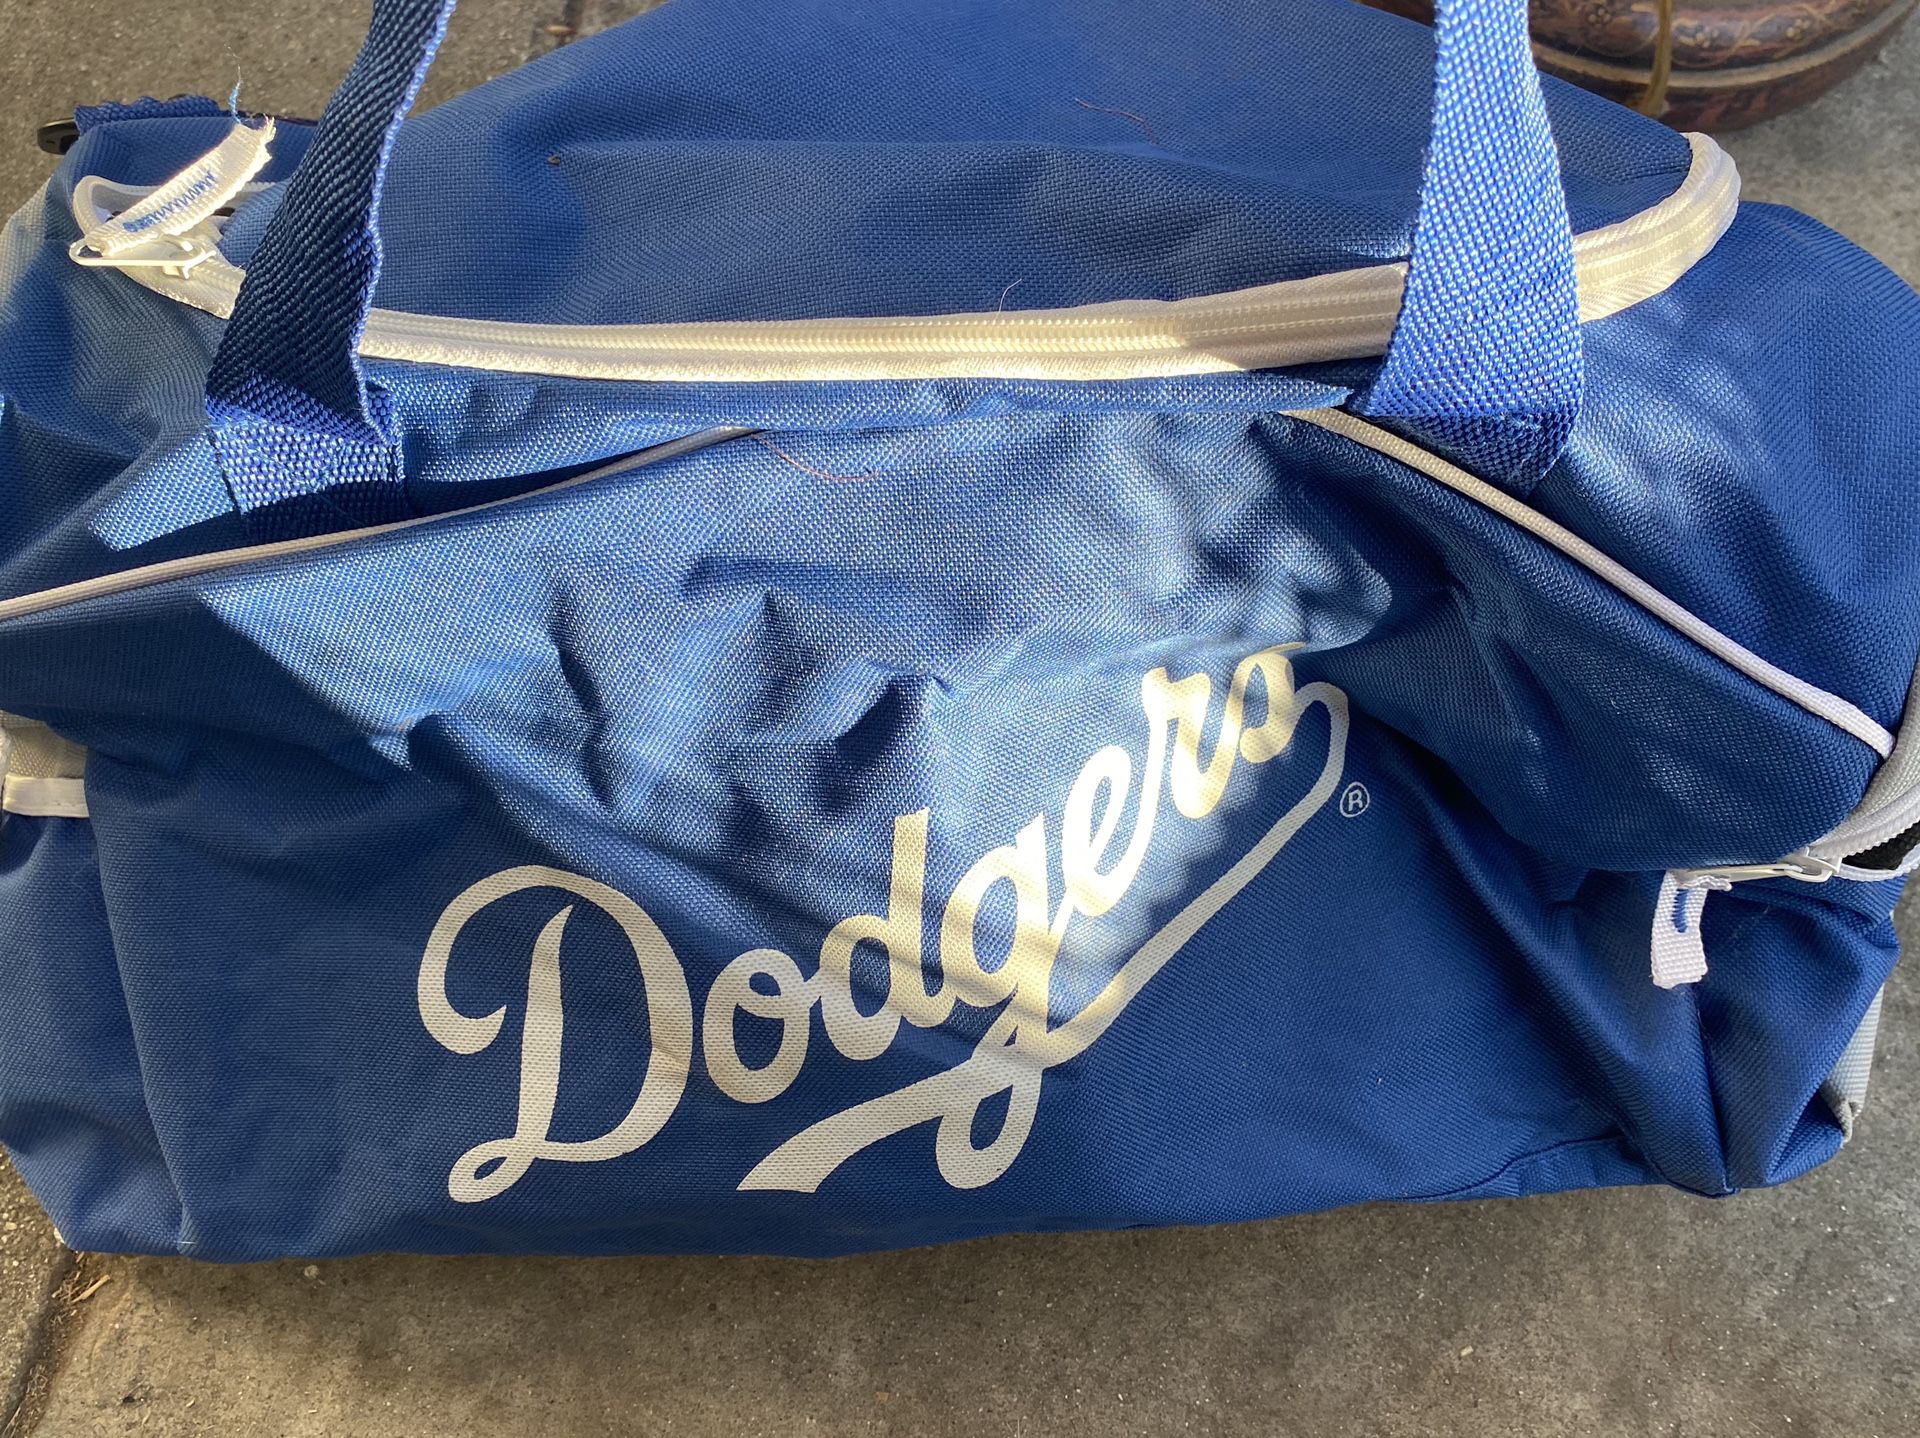 Dodgers duffle bag